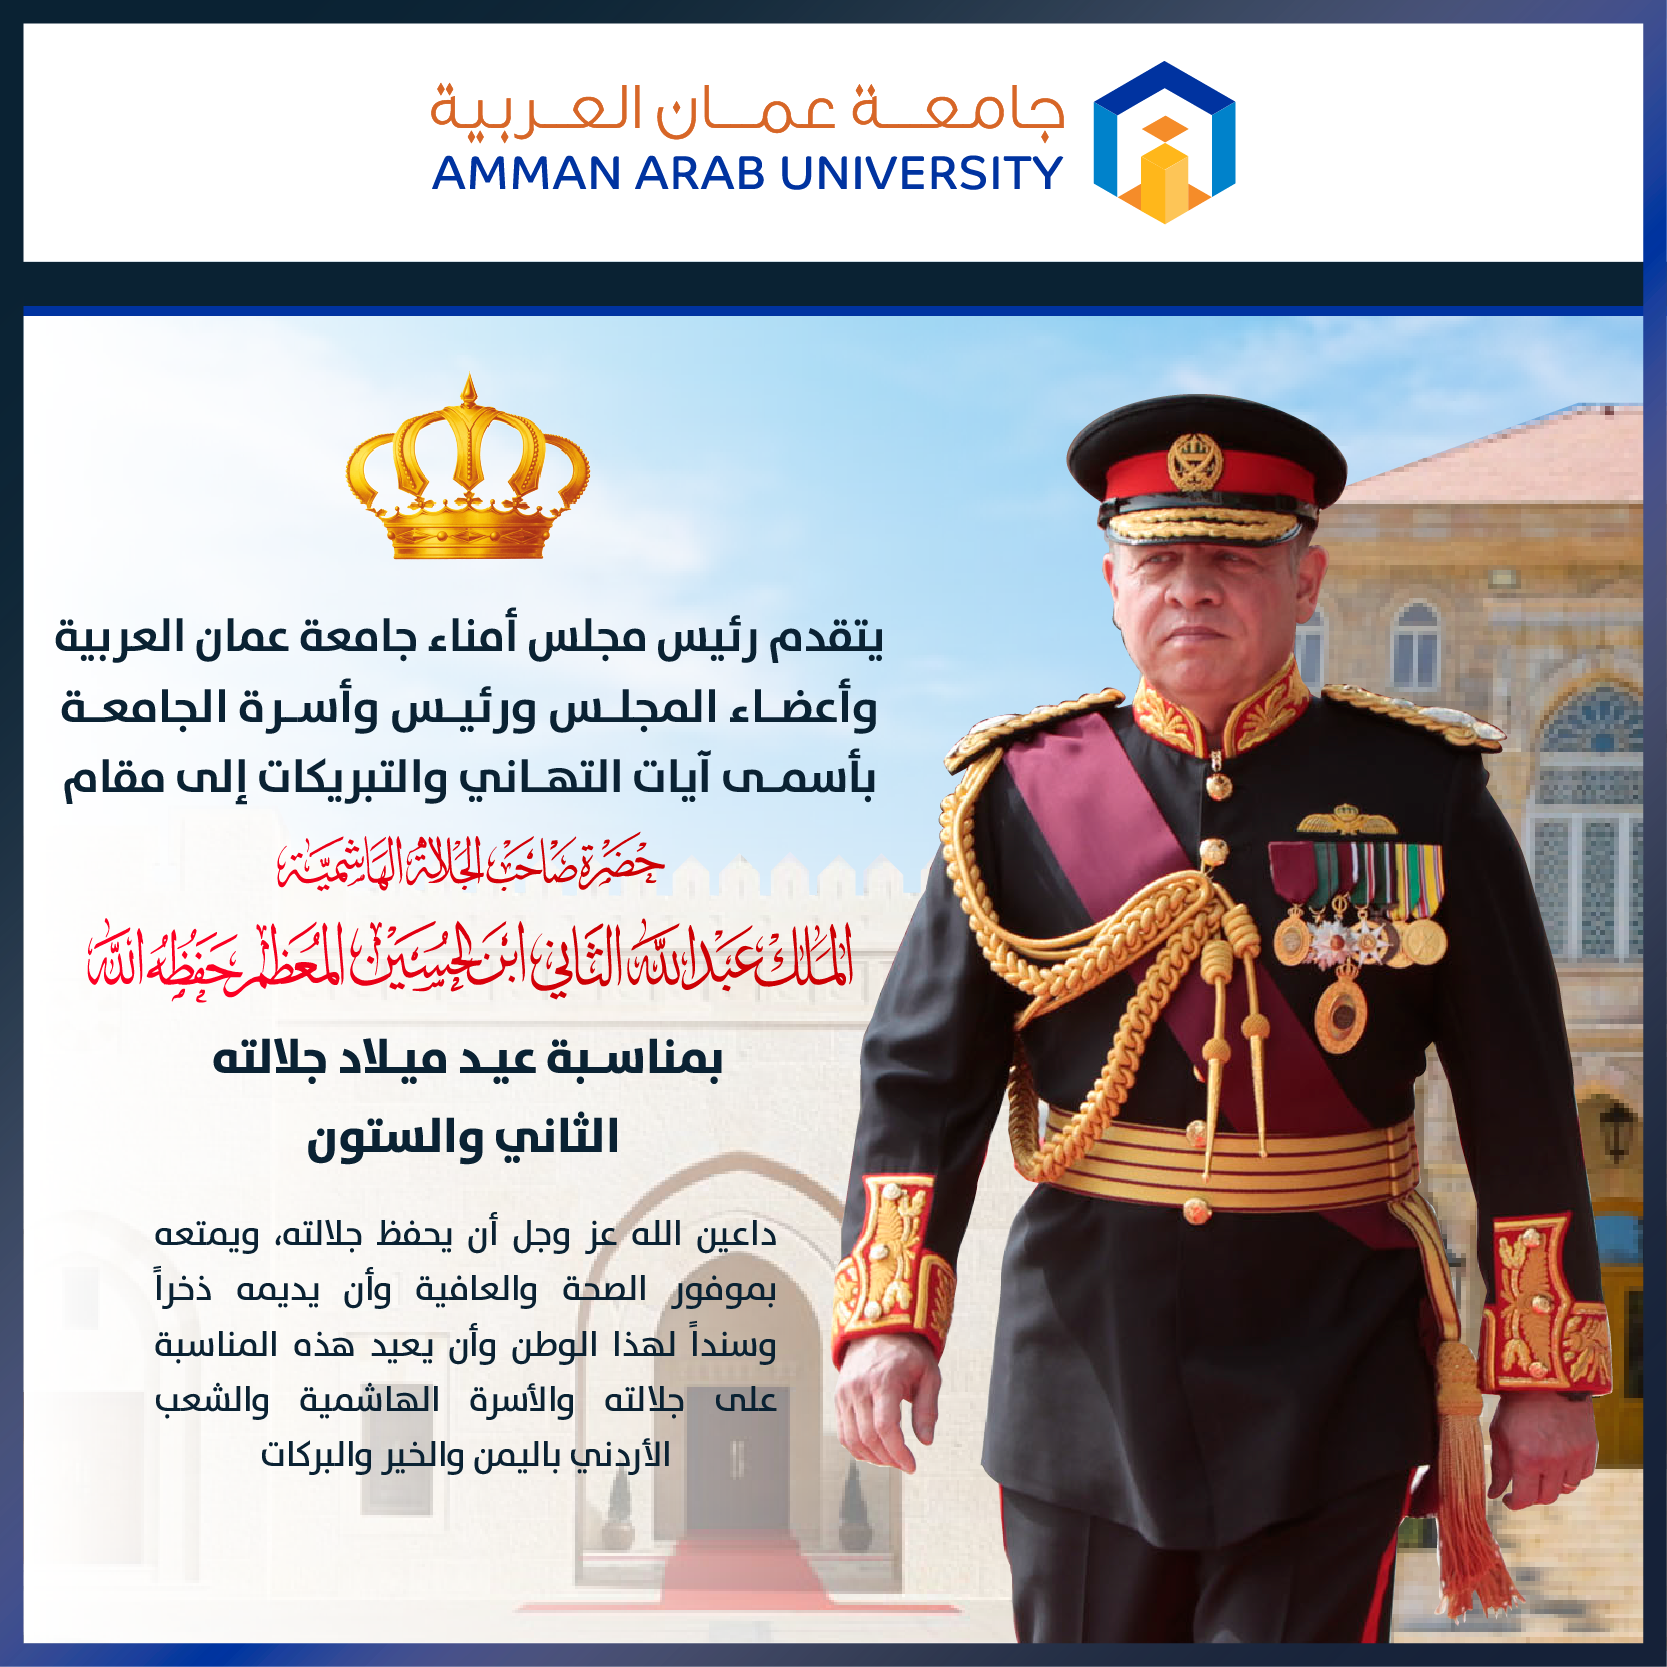 أسرة جامعة عمان العربية تتقدم بأجمل التهاني والتبريكات بمناسبة عيد ميلاد جلالة الملك عبدالله الثاني ابن الحسين المعظم